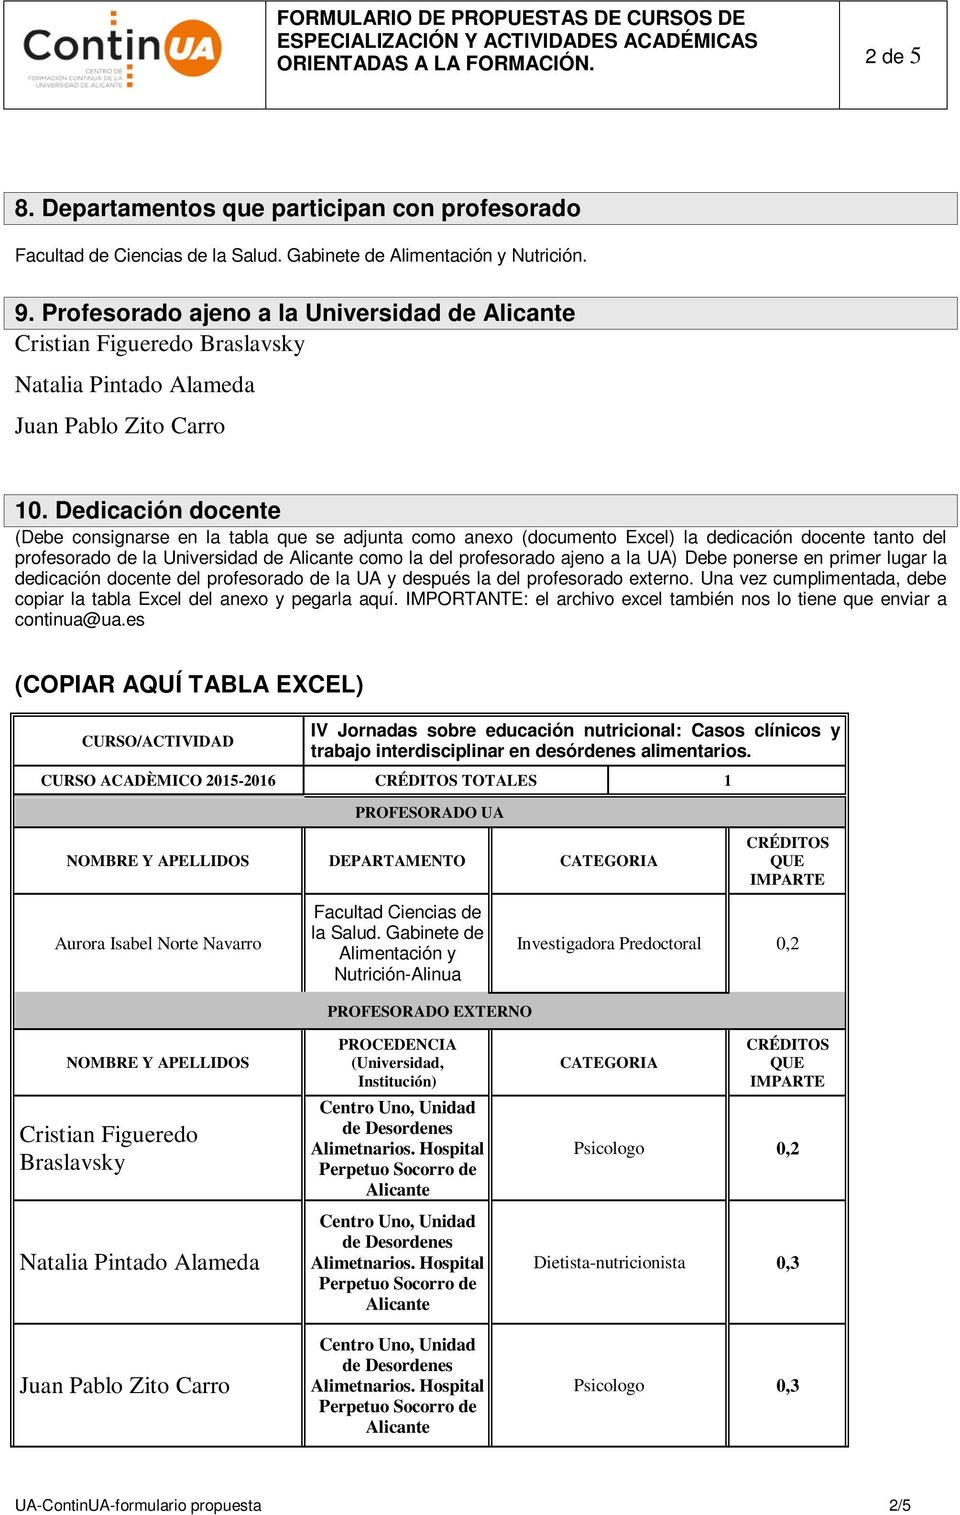 Dedicación docente (Debe consignarse en la tabla que se adjunta como anexo (documento Excel) la dedicación docente tanto del profesorado de la Universidad de Alicante como la del profesorado ajeno a